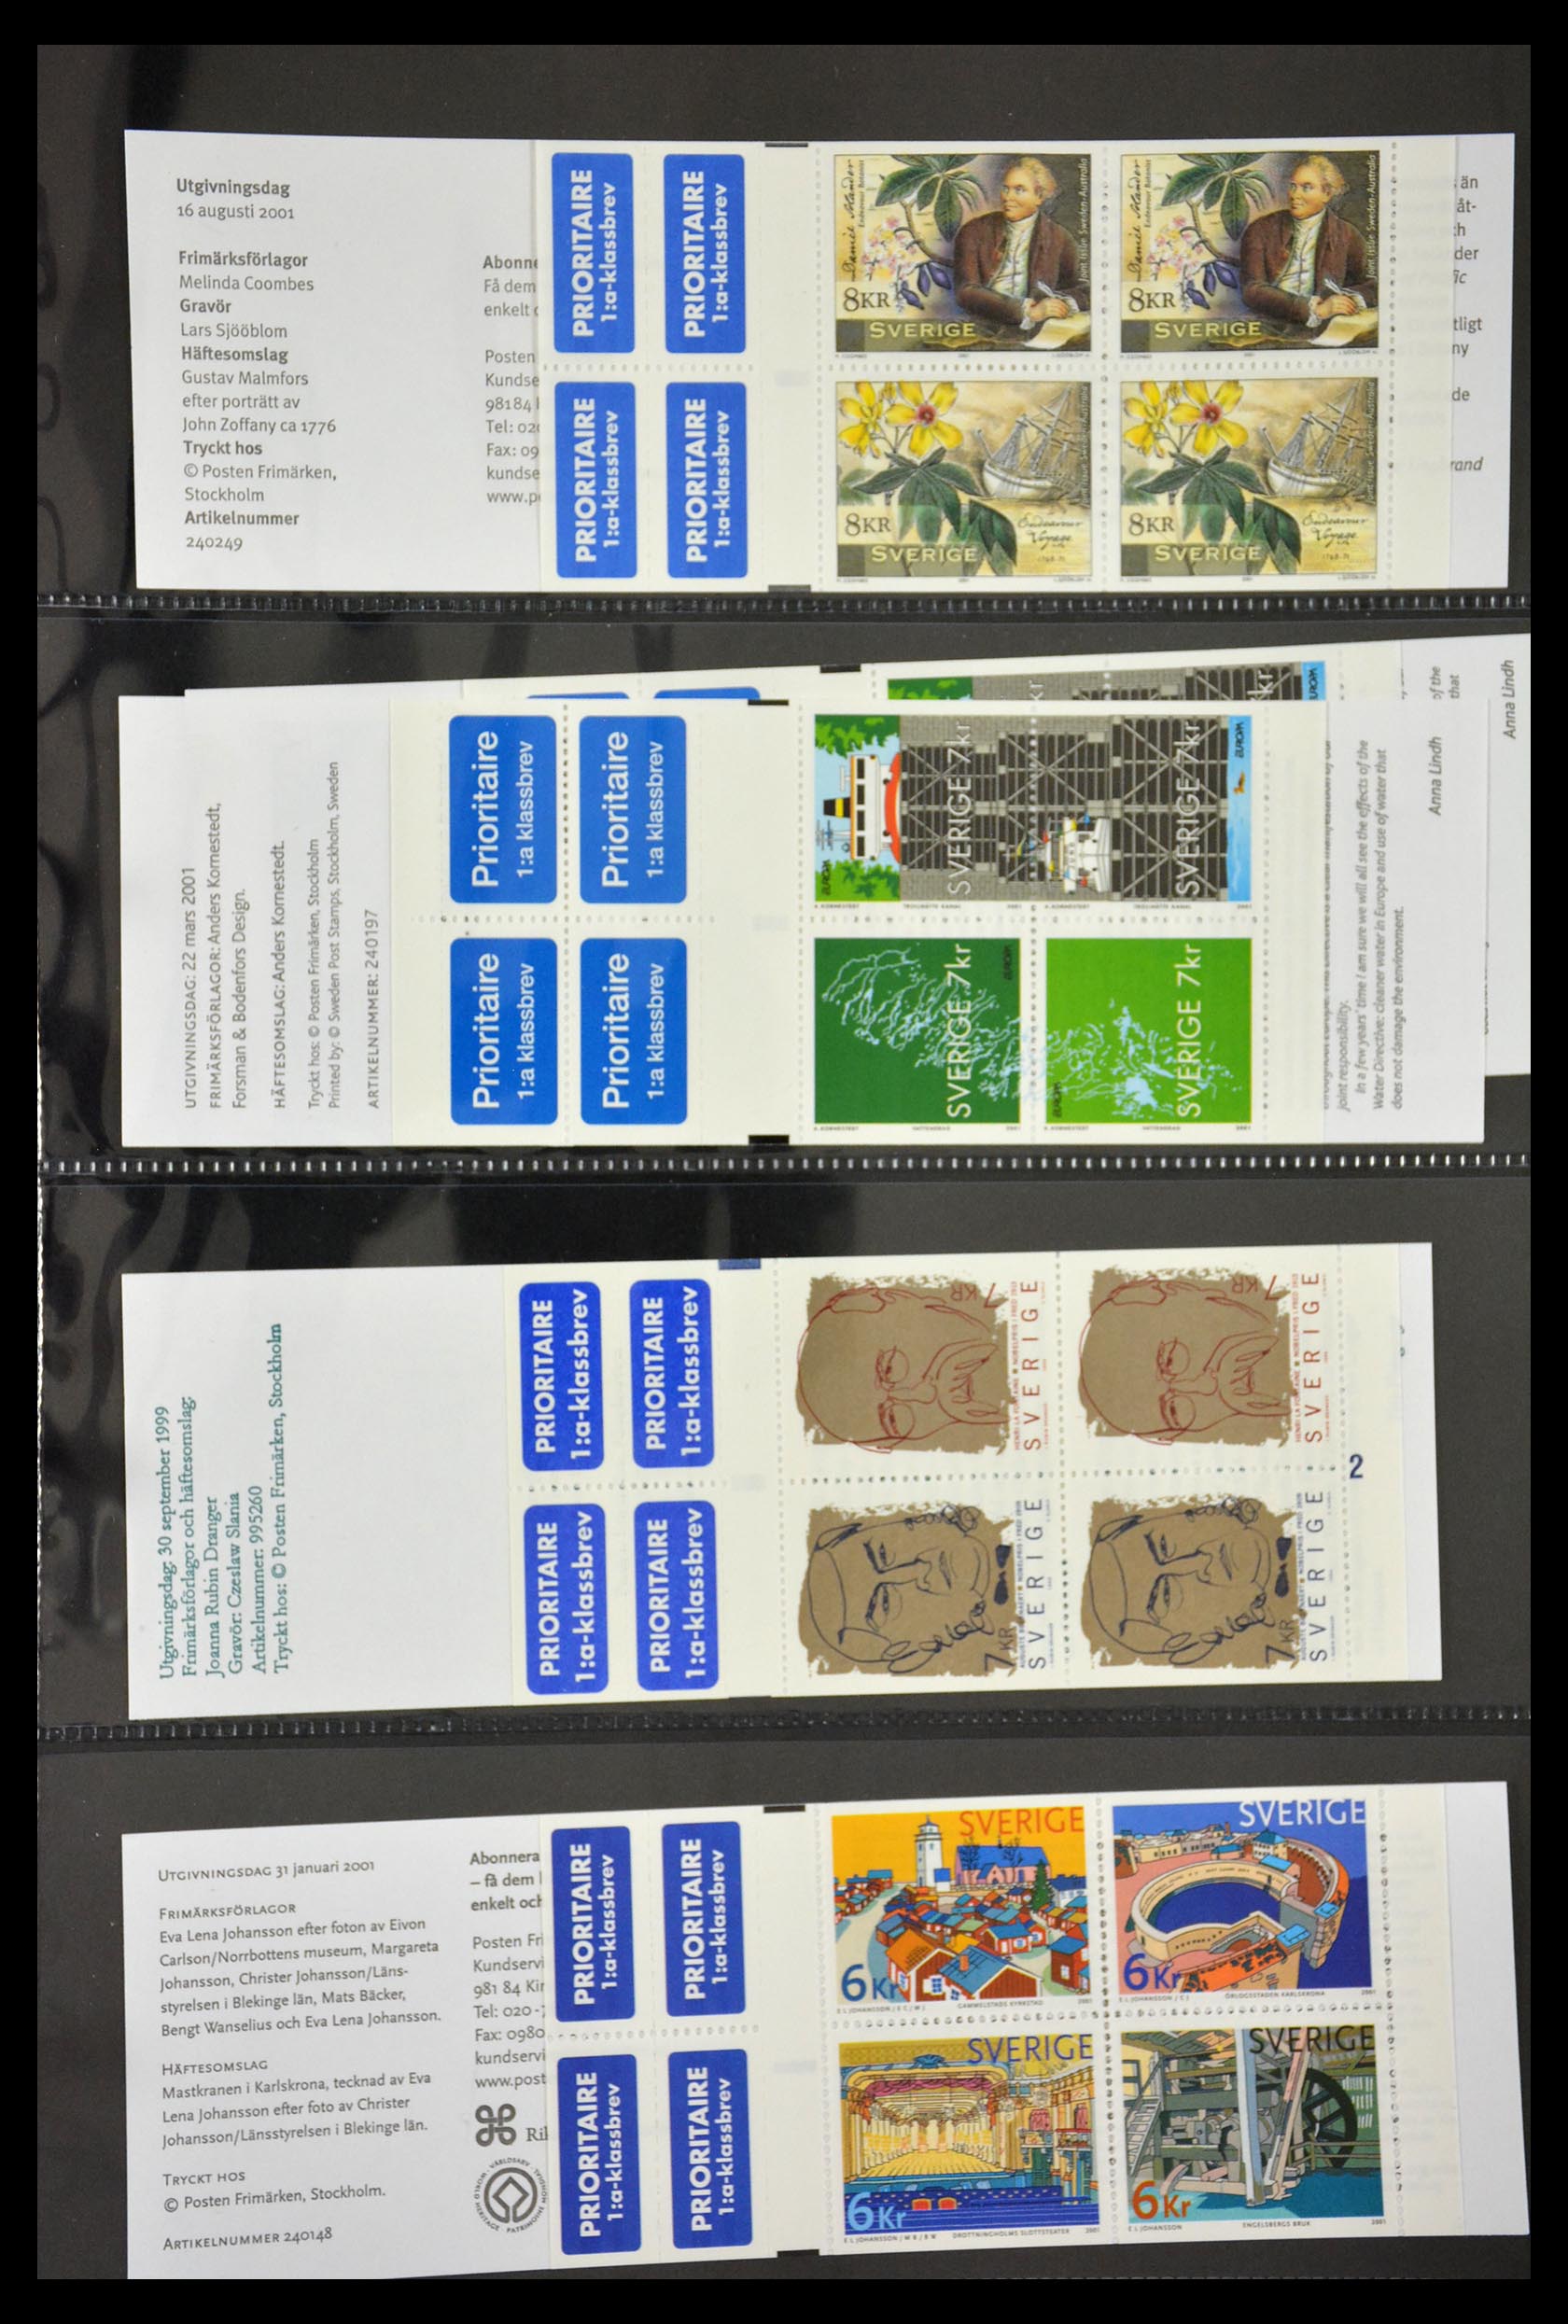 29368 125 - 29368 Sweden stamp booklets 1942-1996.